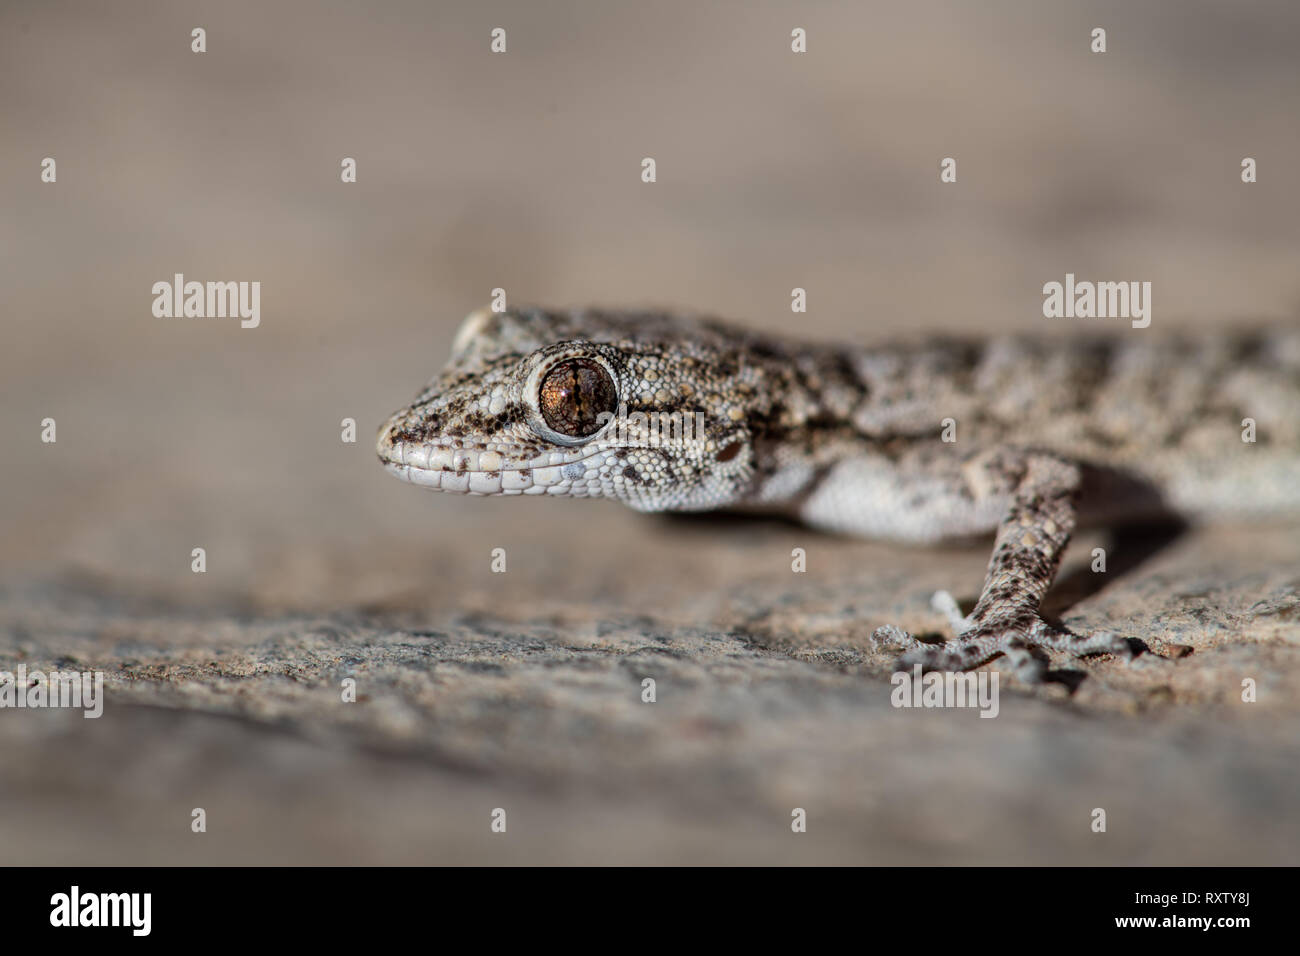 Un Kotschy's gecko encontrados en su entorno natural Foto de stock